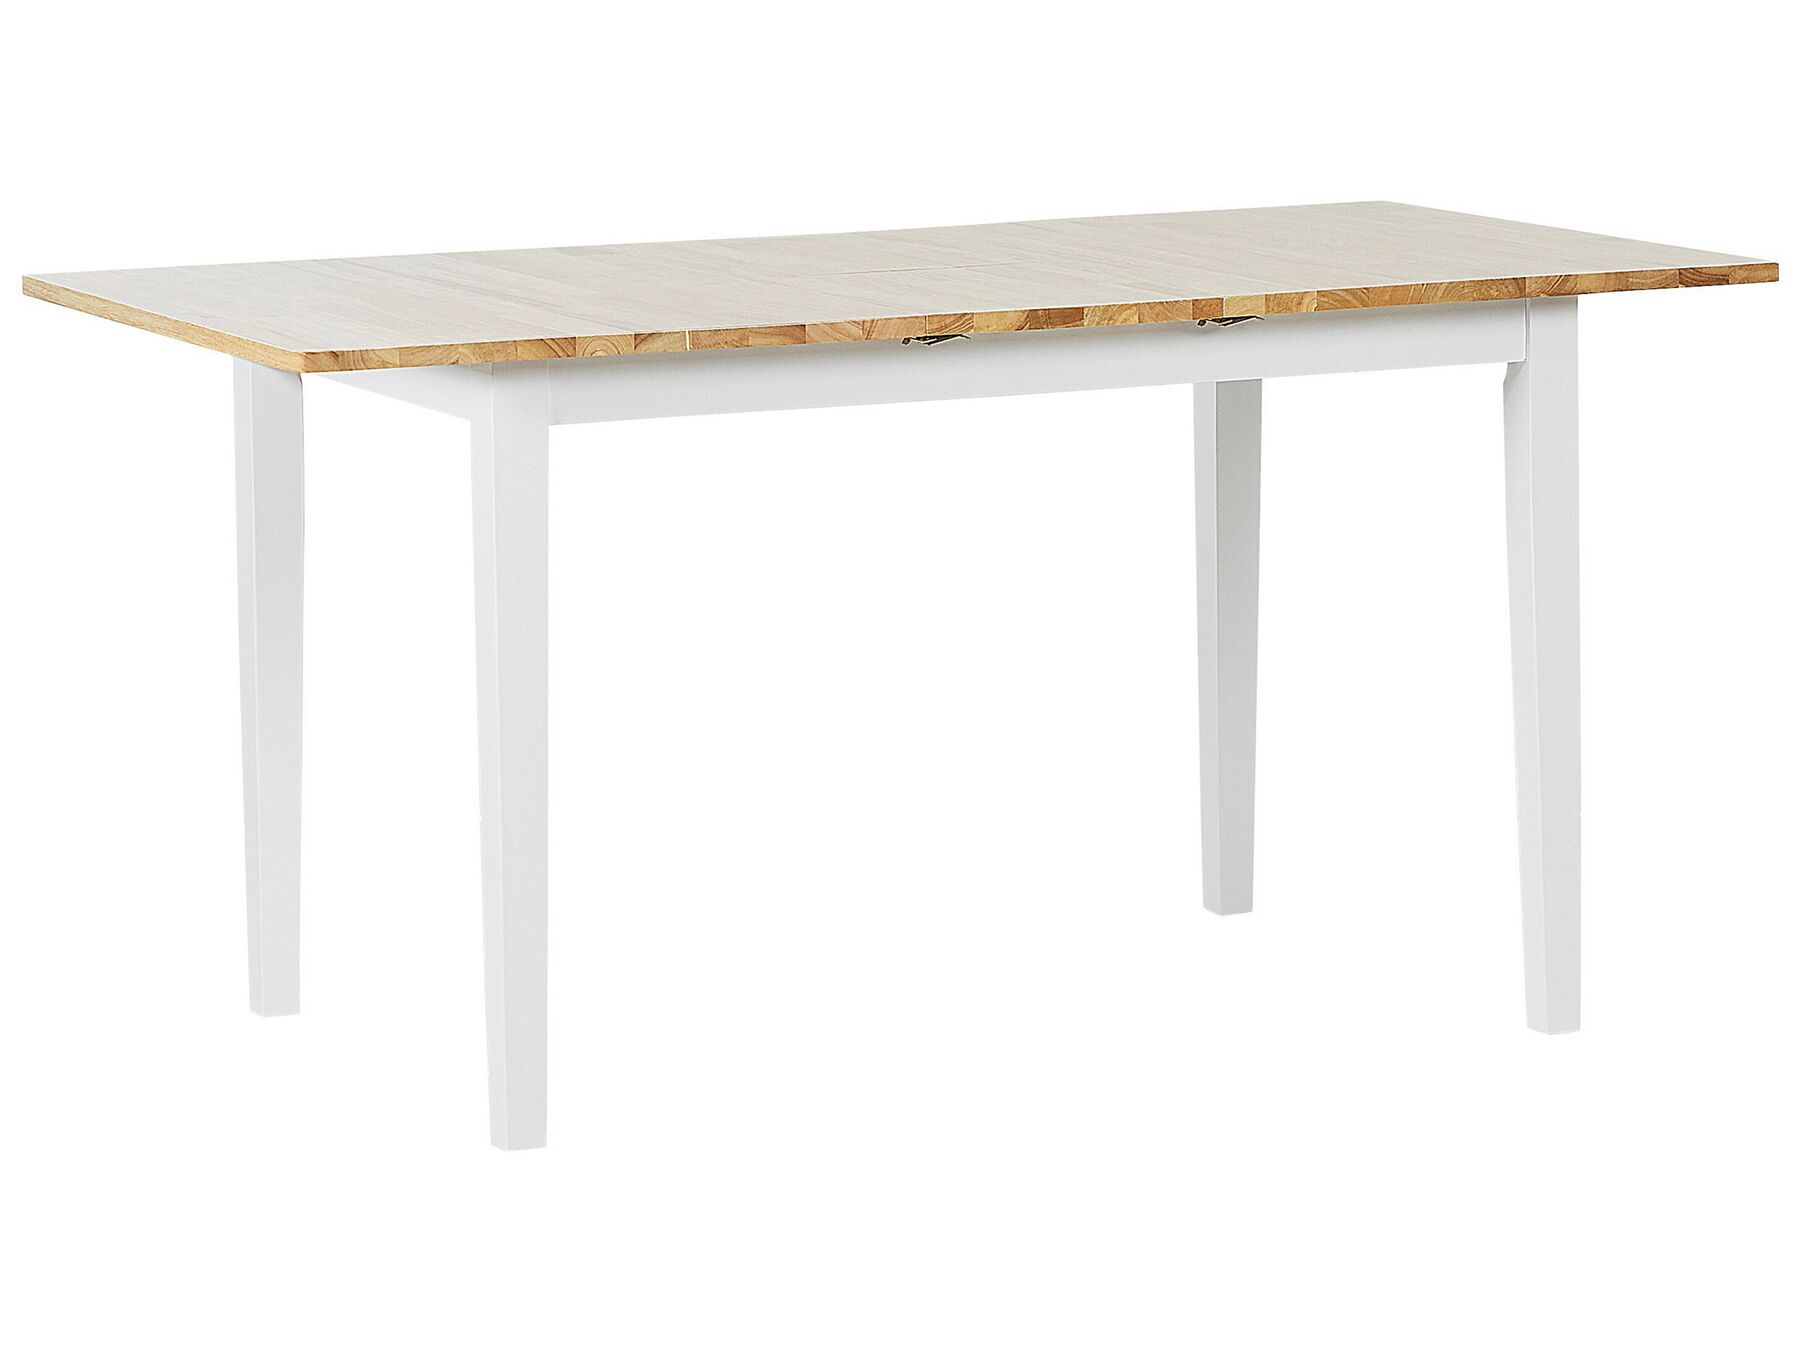 Extending Dining Table 120/150 cm Light Natural Wood Top White Legs Houston